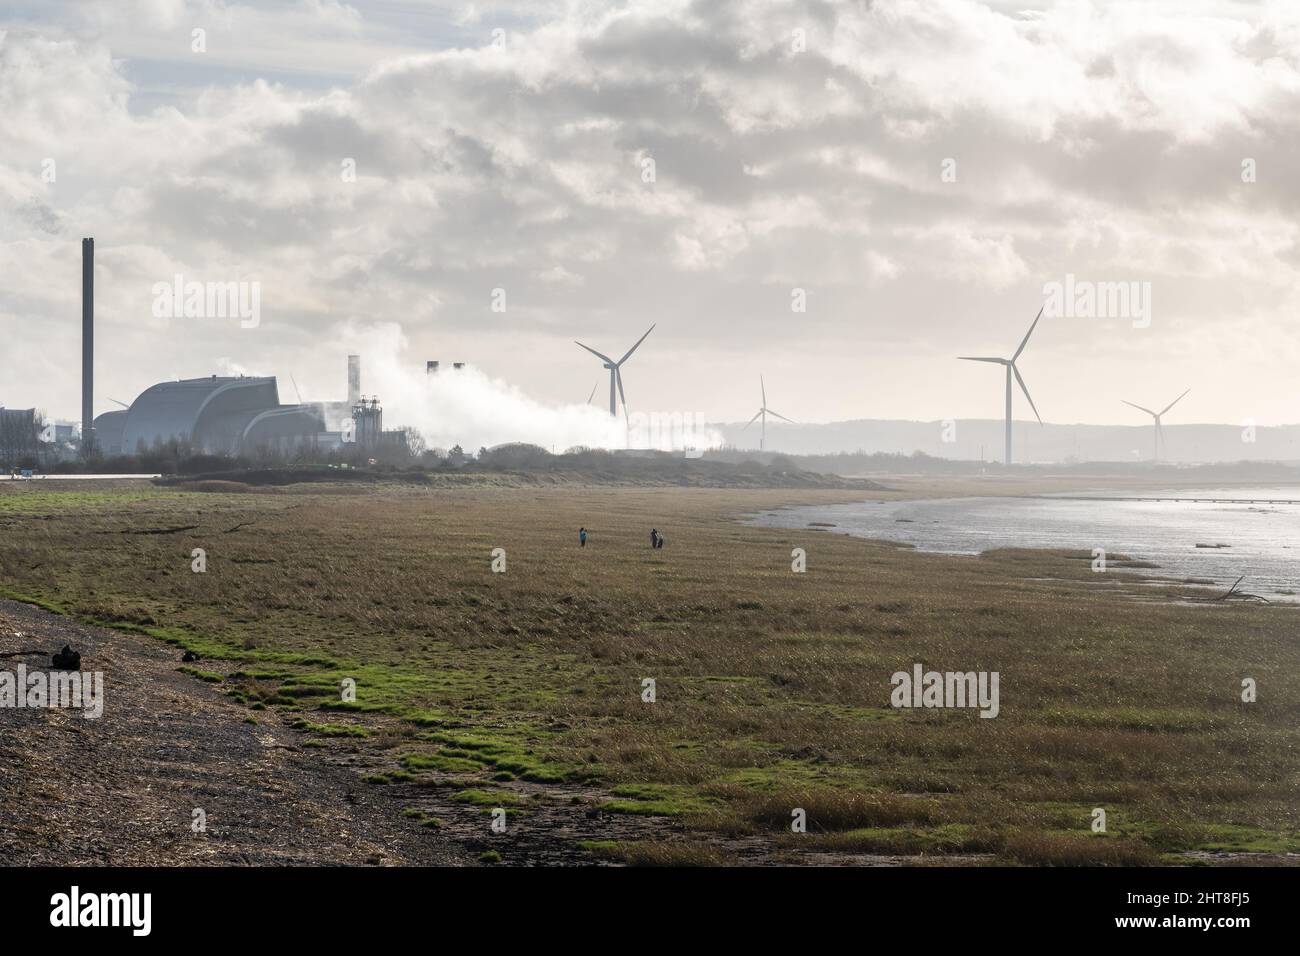 Los observadores de aves se encuentran a orillas del estuario de Severn, con turbinas eólicas y vapor que se elevan desde el Centro de Recuperación de Energía de Severnside y Seabank Power Foto de stock